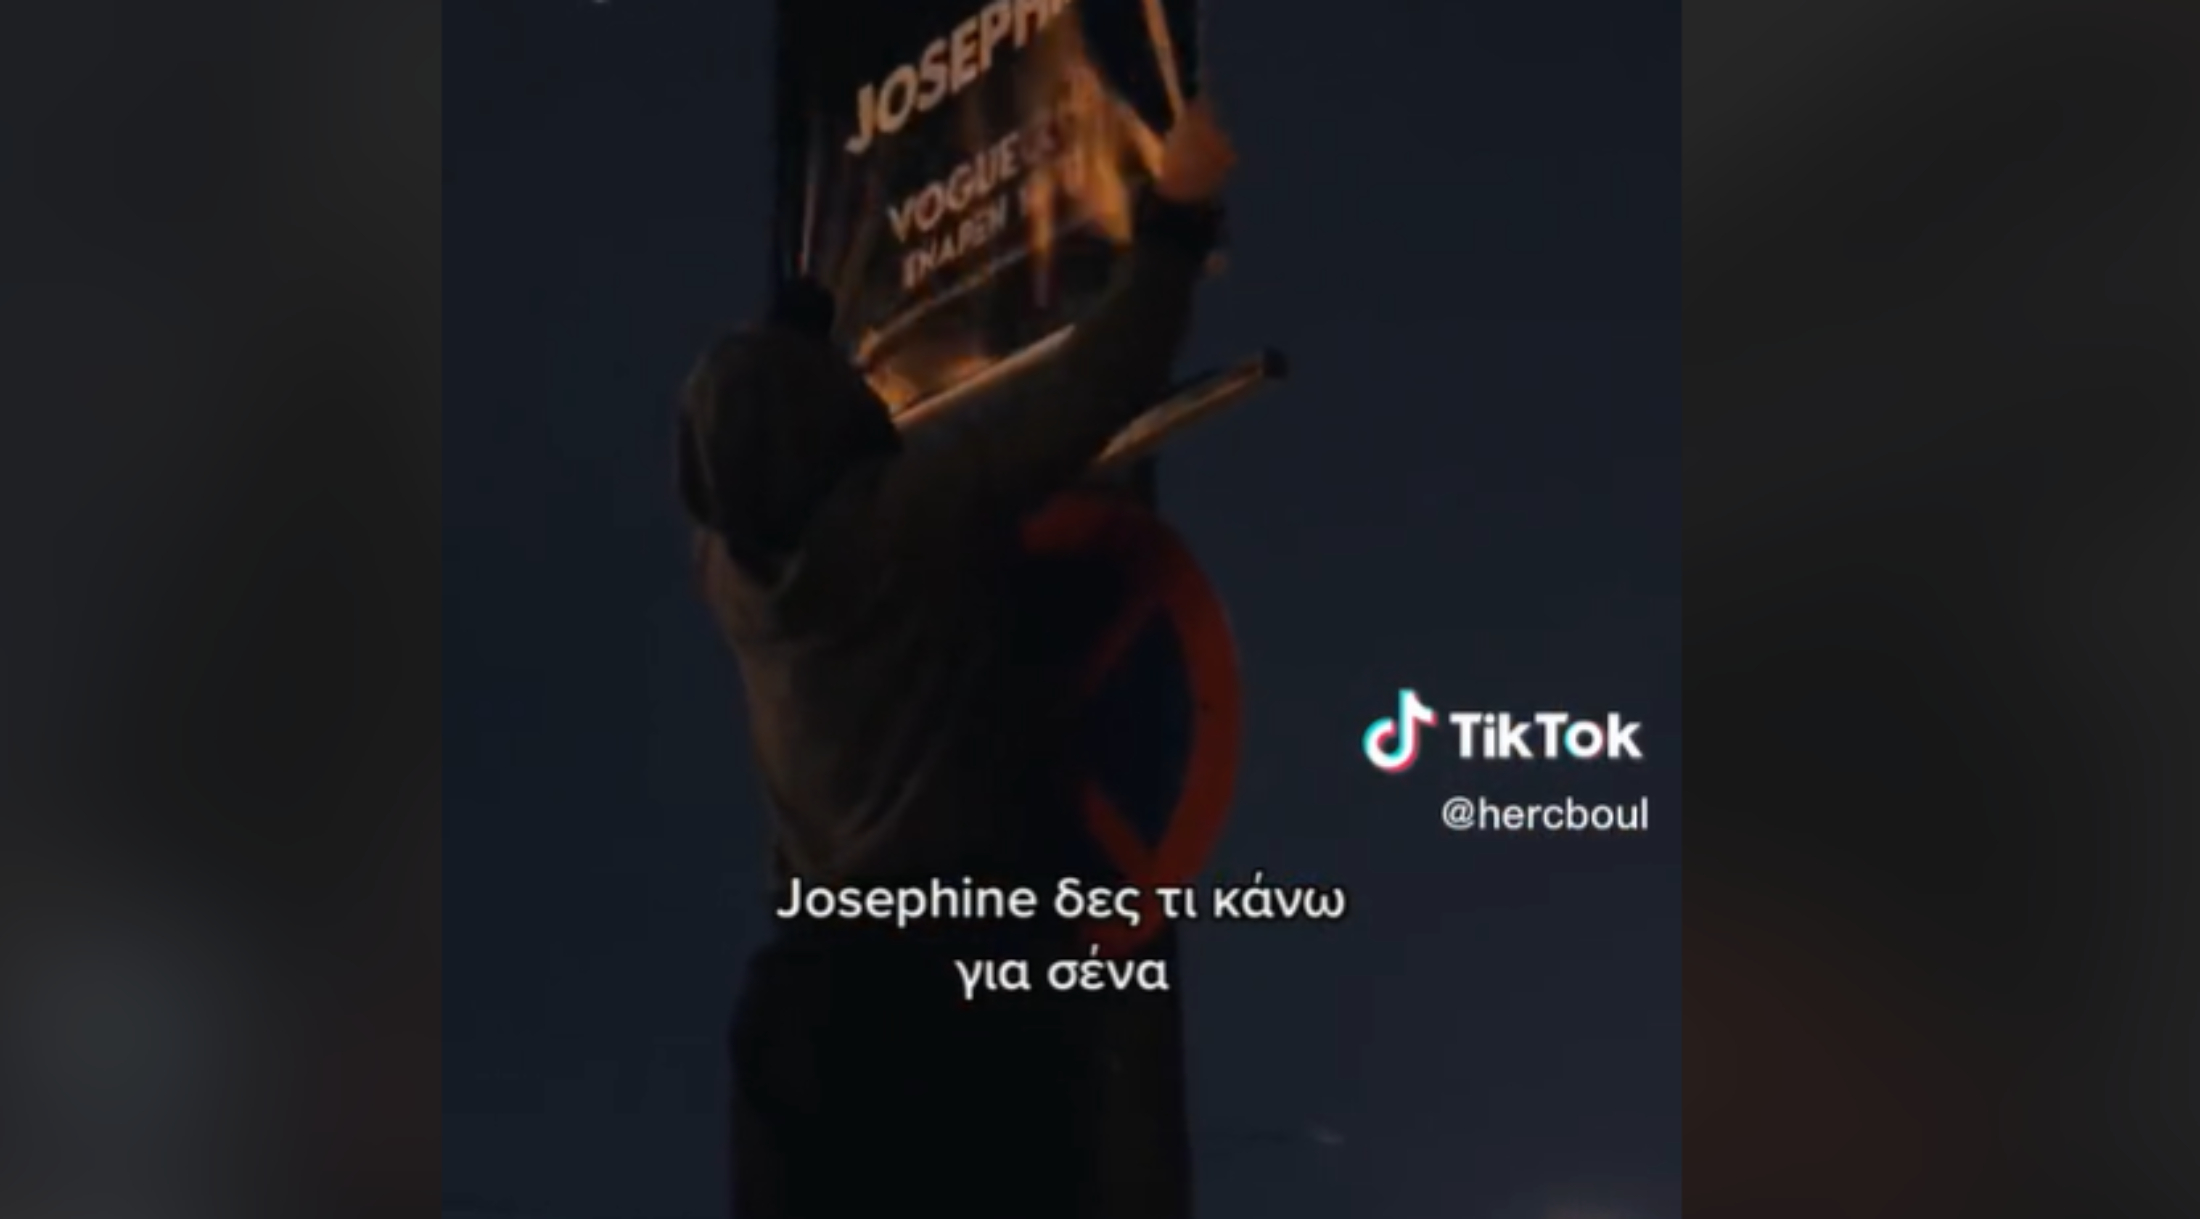 «Ζόζεφιν δες τι κάνω για σένα»: Κατέβασε αφίσα της τραγουδίστριας και την πήρε σπίτι του-Το viral TikTok (VIDEO)